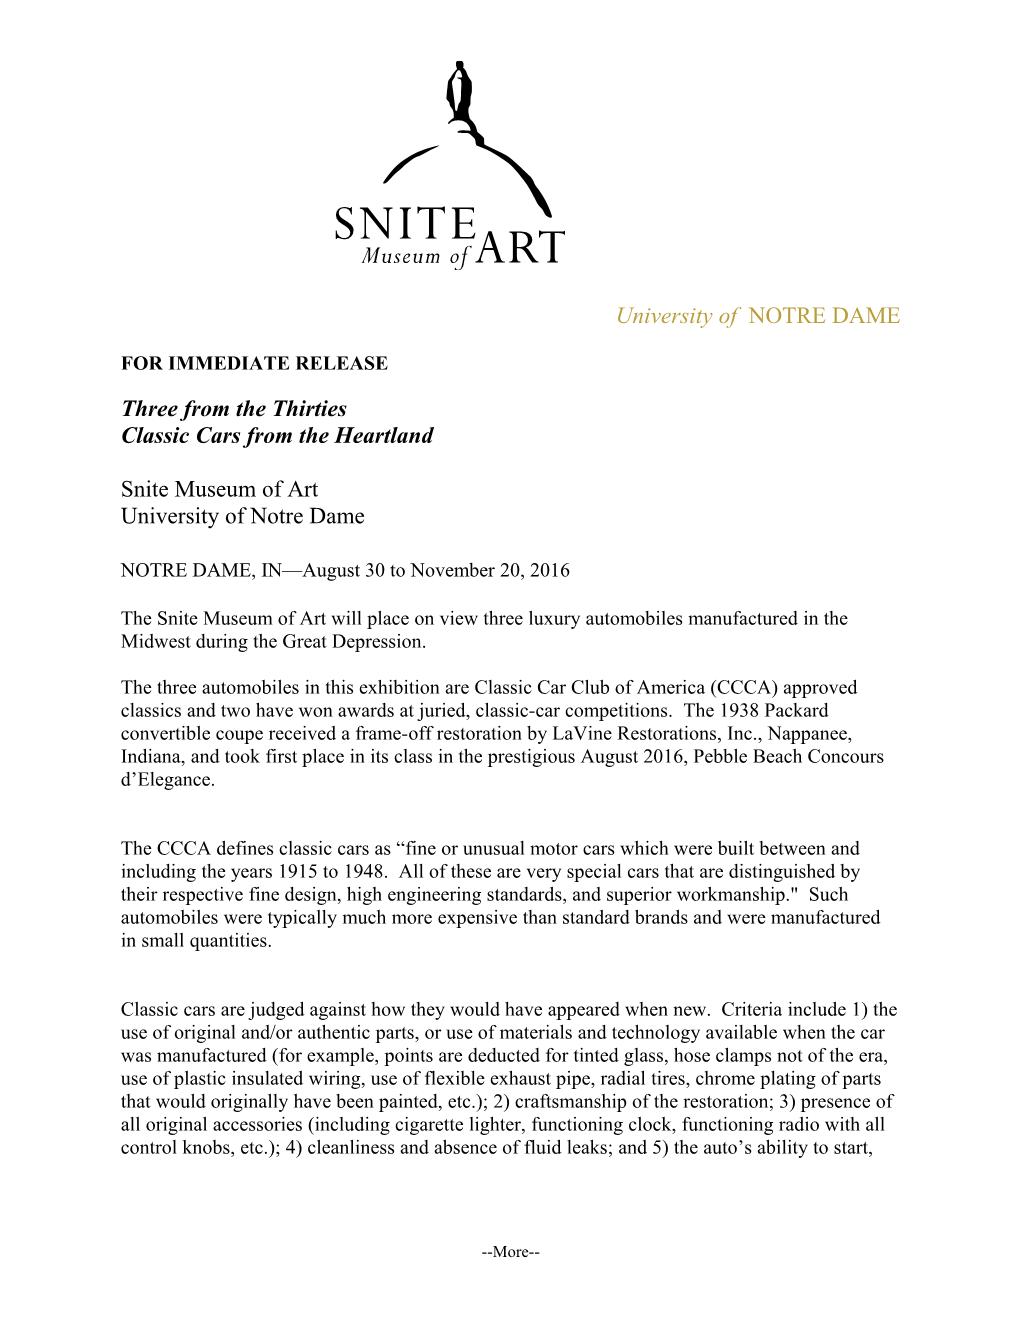 Snite Museum Press Release